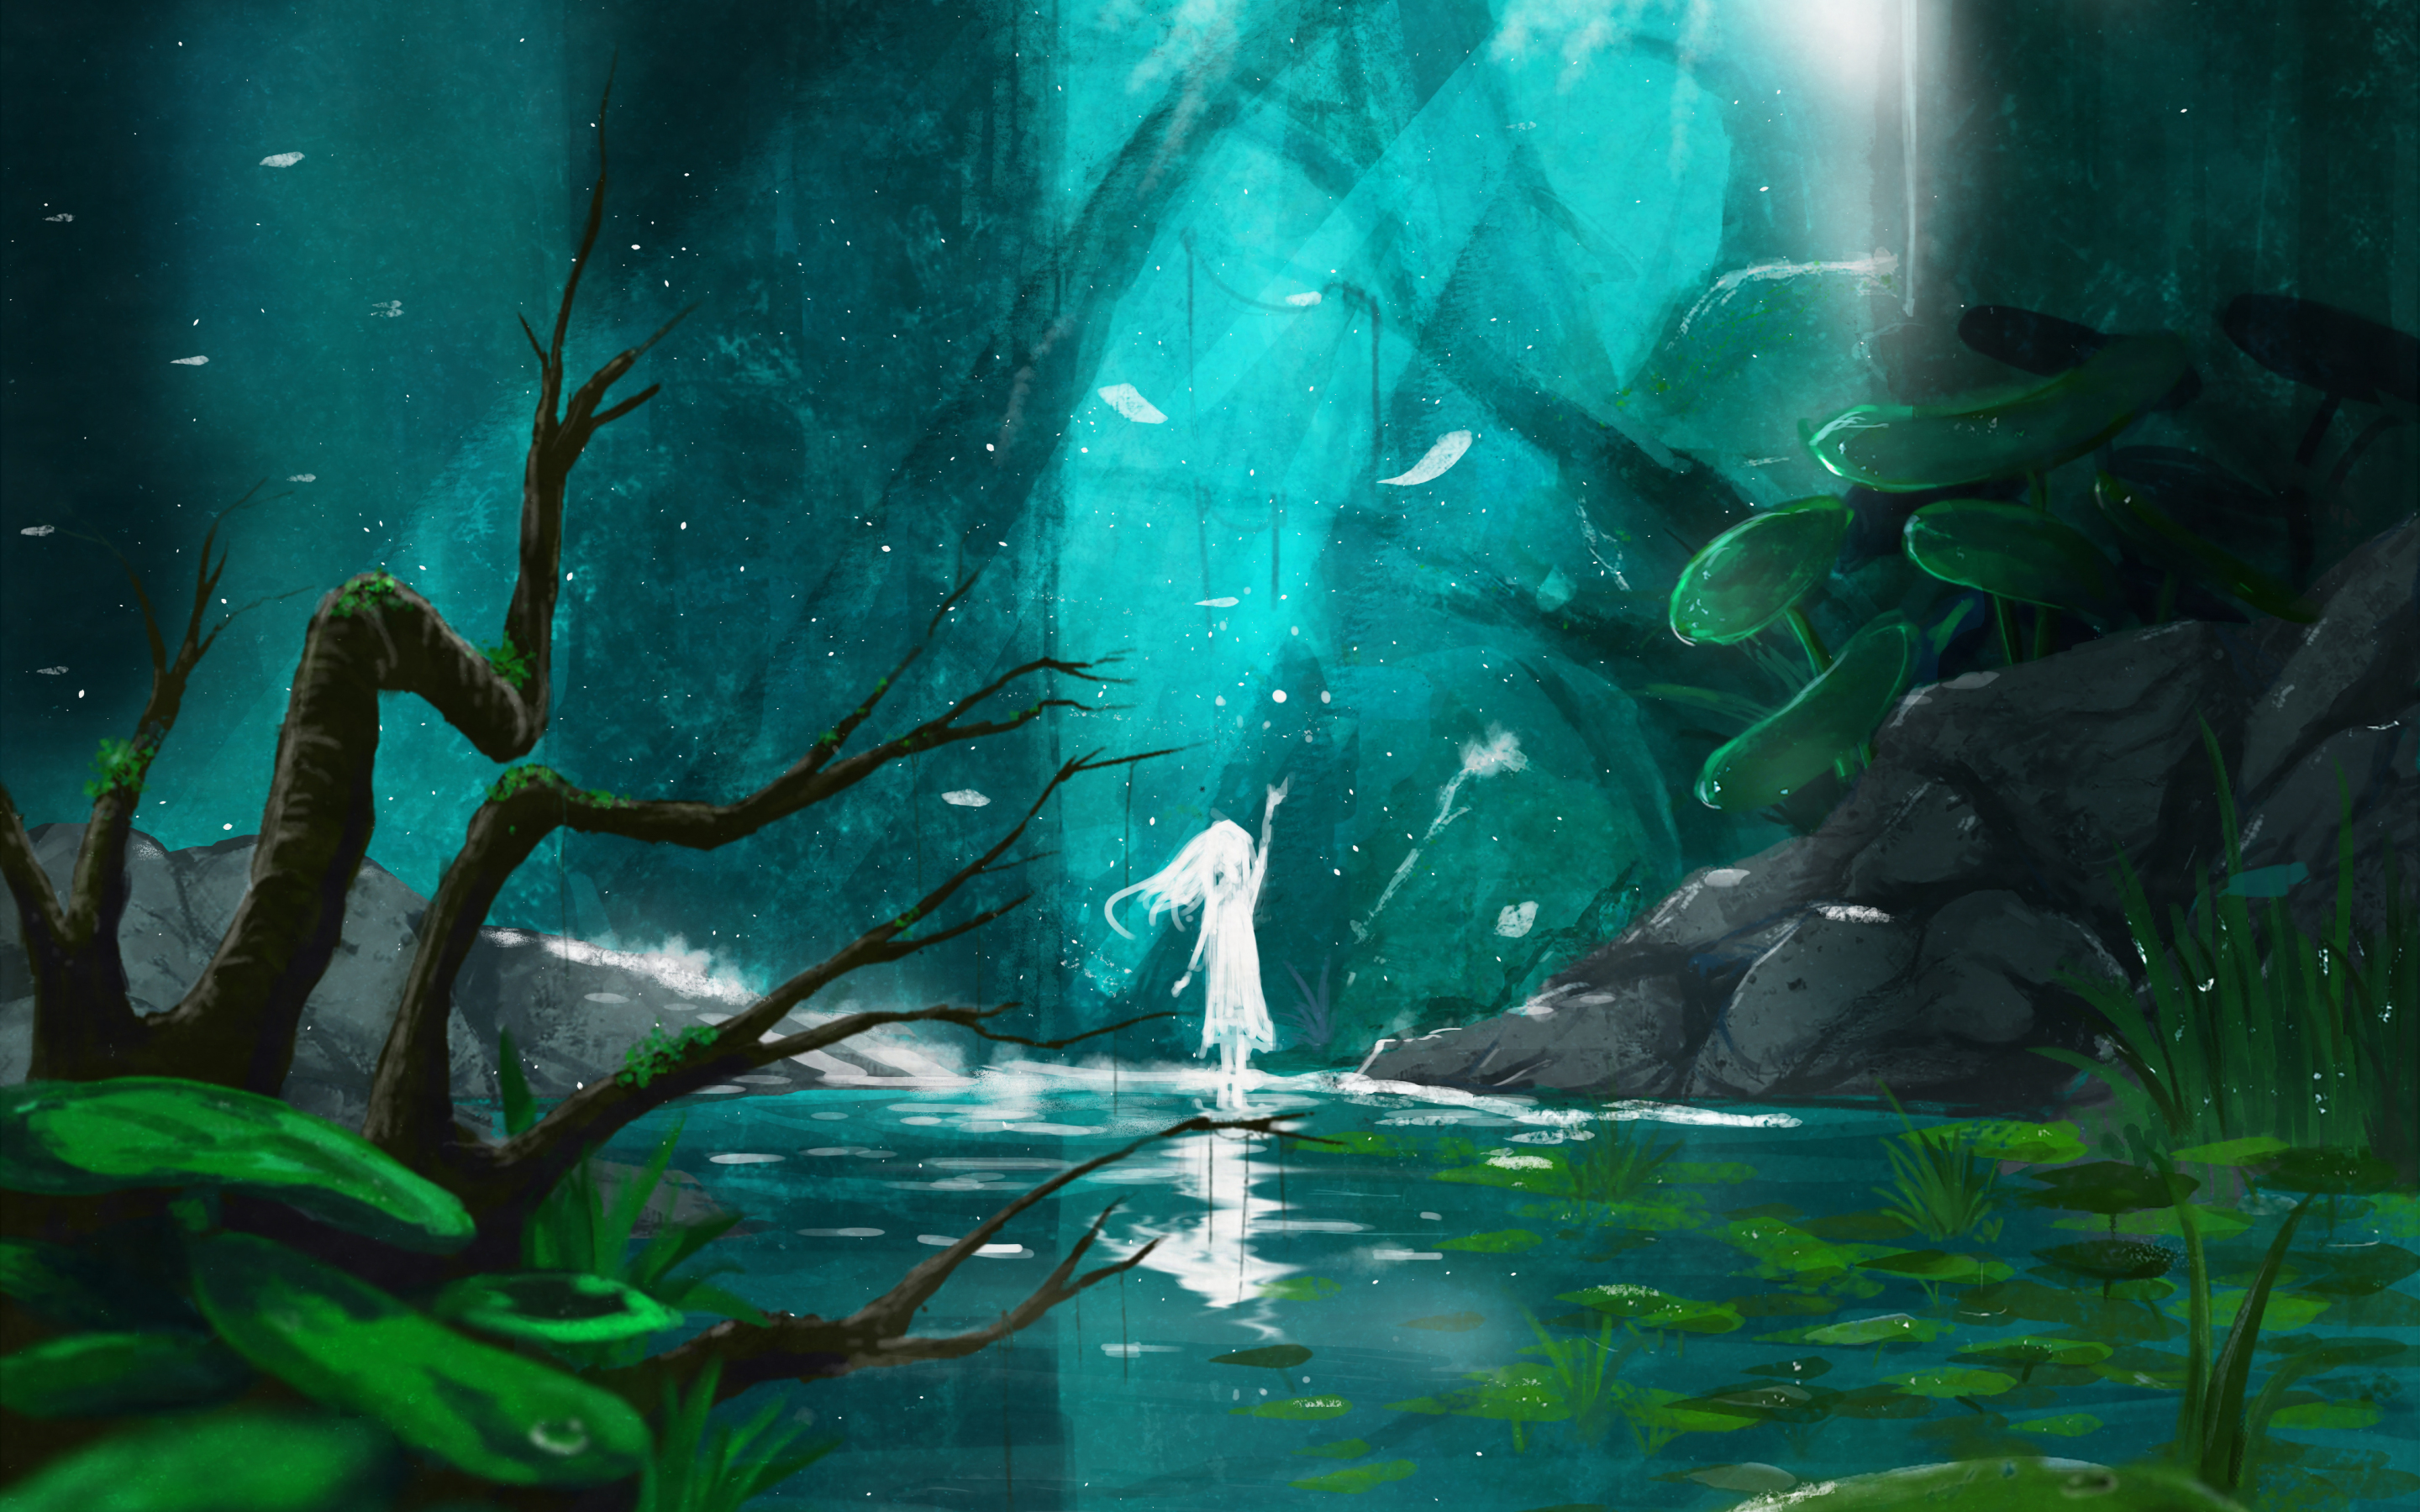 Lake, spirit, anime girl, original, fantasy, 2880x1800 wallpaper